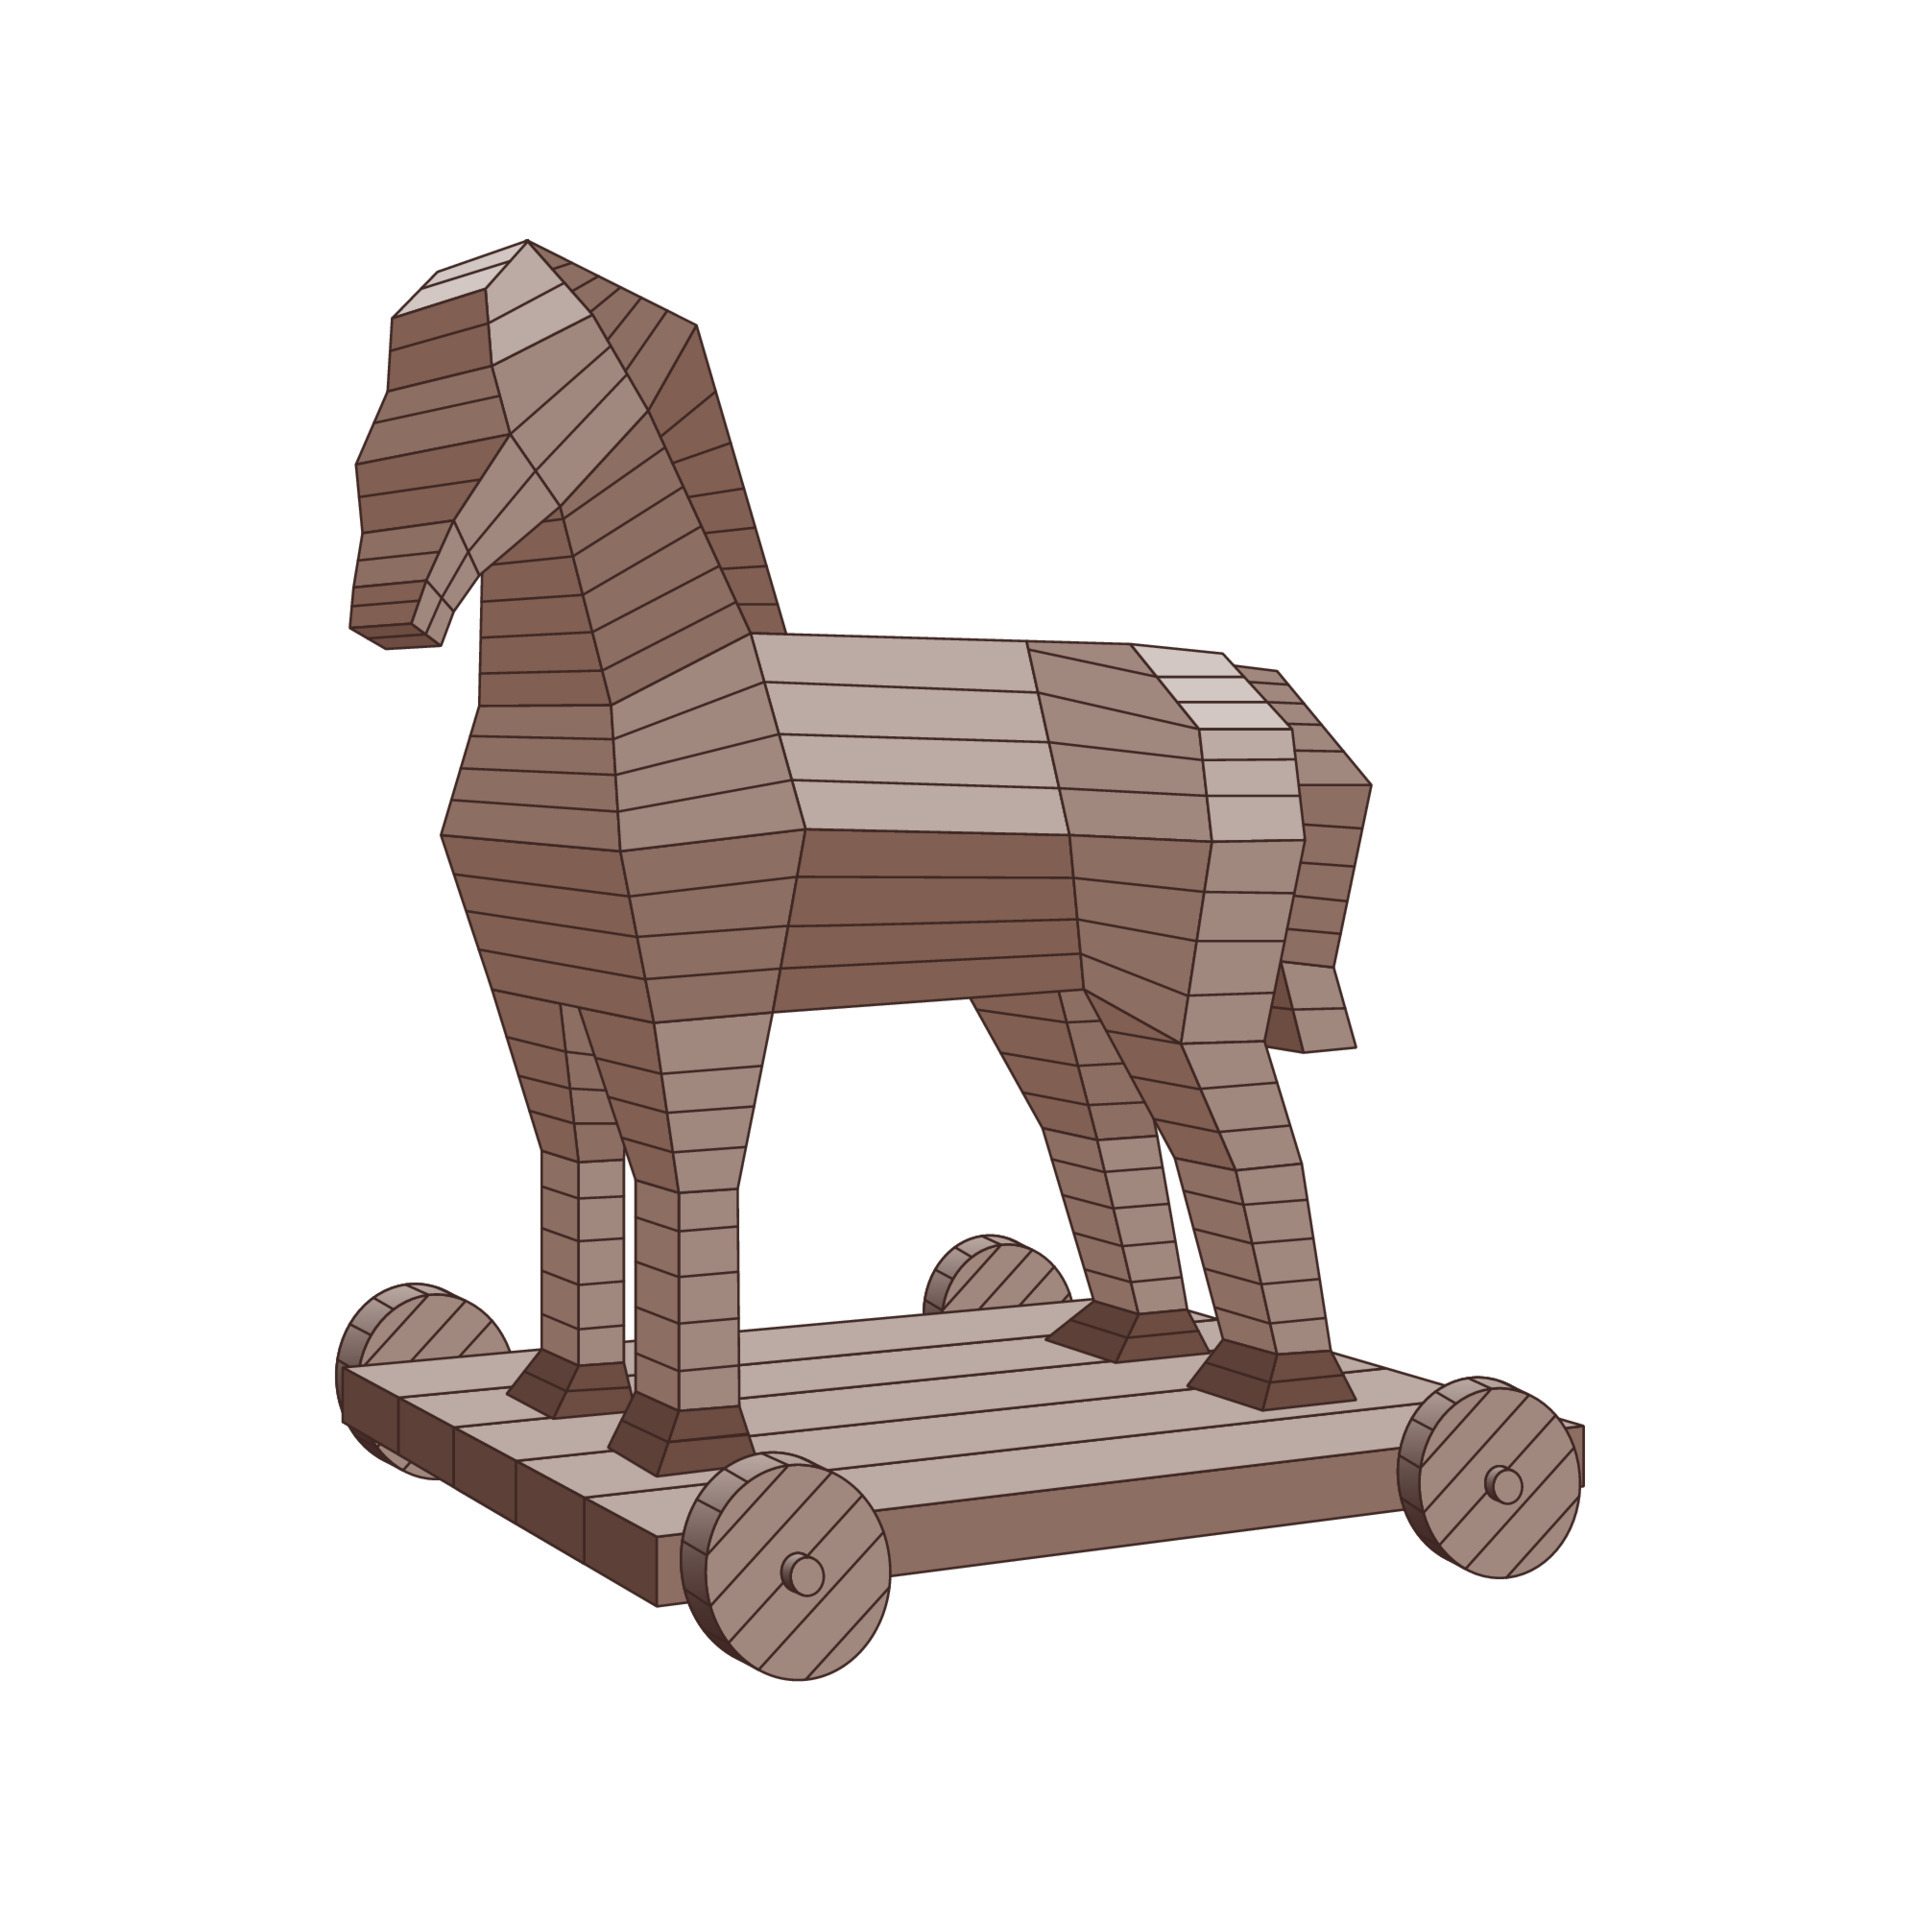 Cavalo de Troia - Cena 3D - Educação e Aprendizagem Digital Mozaik